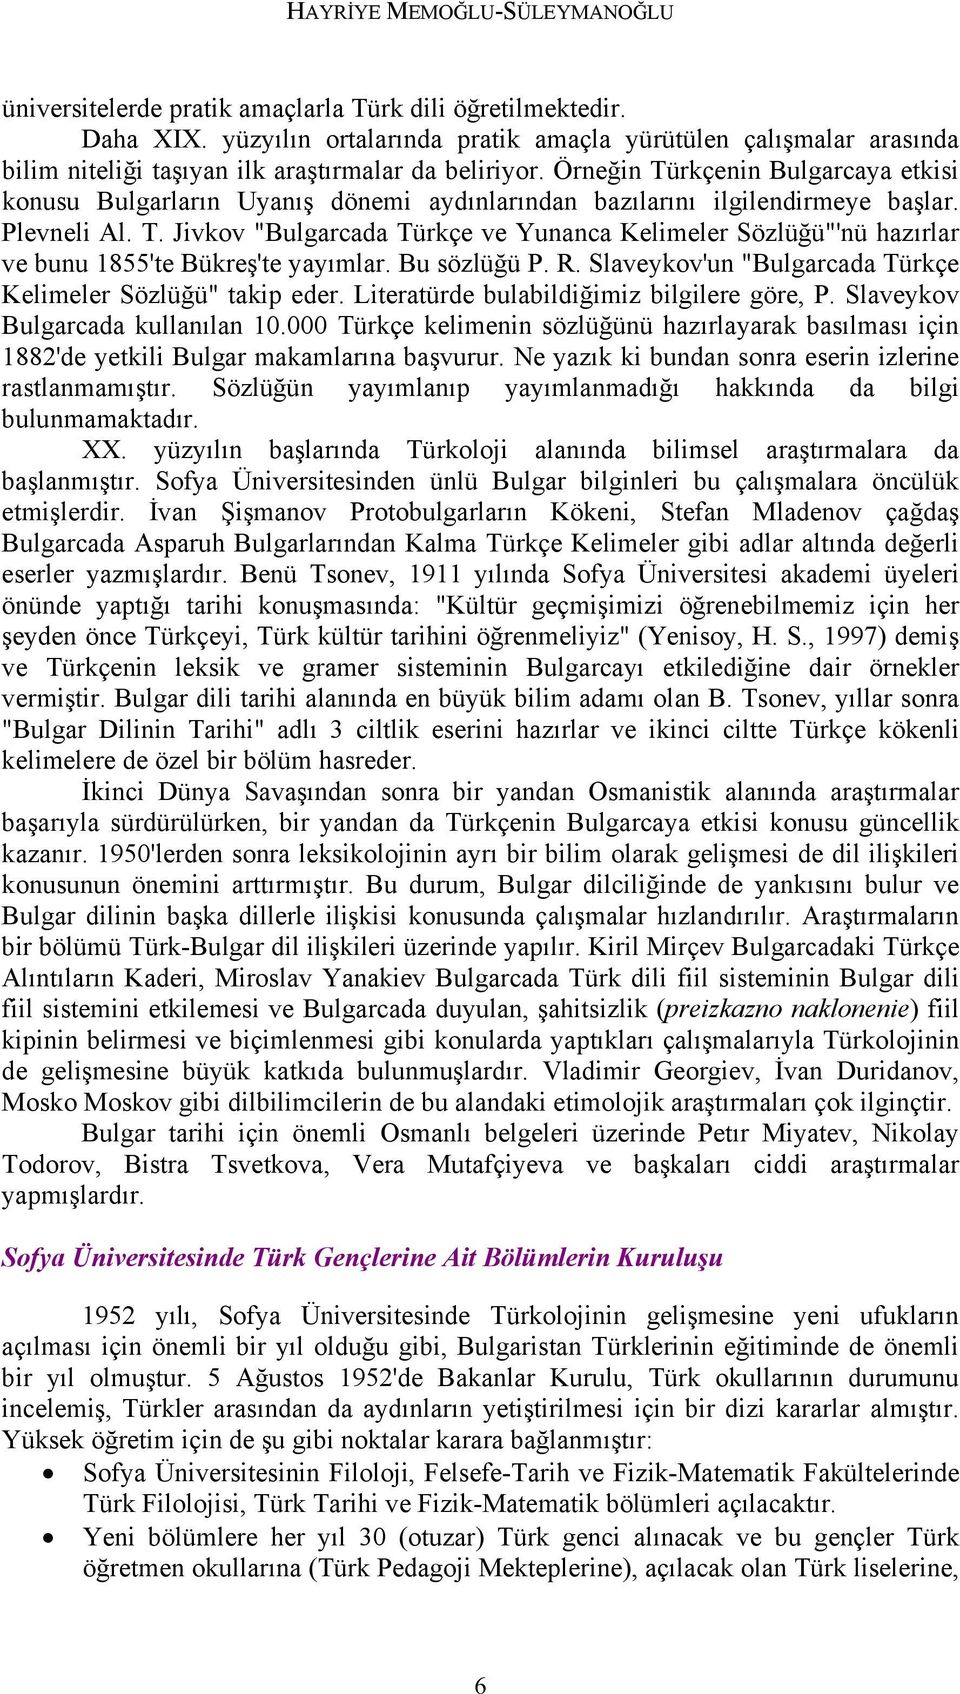 Örneğin Türkçenin Bulgarcaya etkisi konusu Bulgarların Uyanış dönemi aydınlarından bazılarını ilgilendirmeye başlar. Plevneli Al. T. Jivkov "Bulgarcada Türkçe ve Yunanca Kelimeler Sözlüğü"'nü hazırlar ve bunu 1855'te Bükreş'te yayımlar.